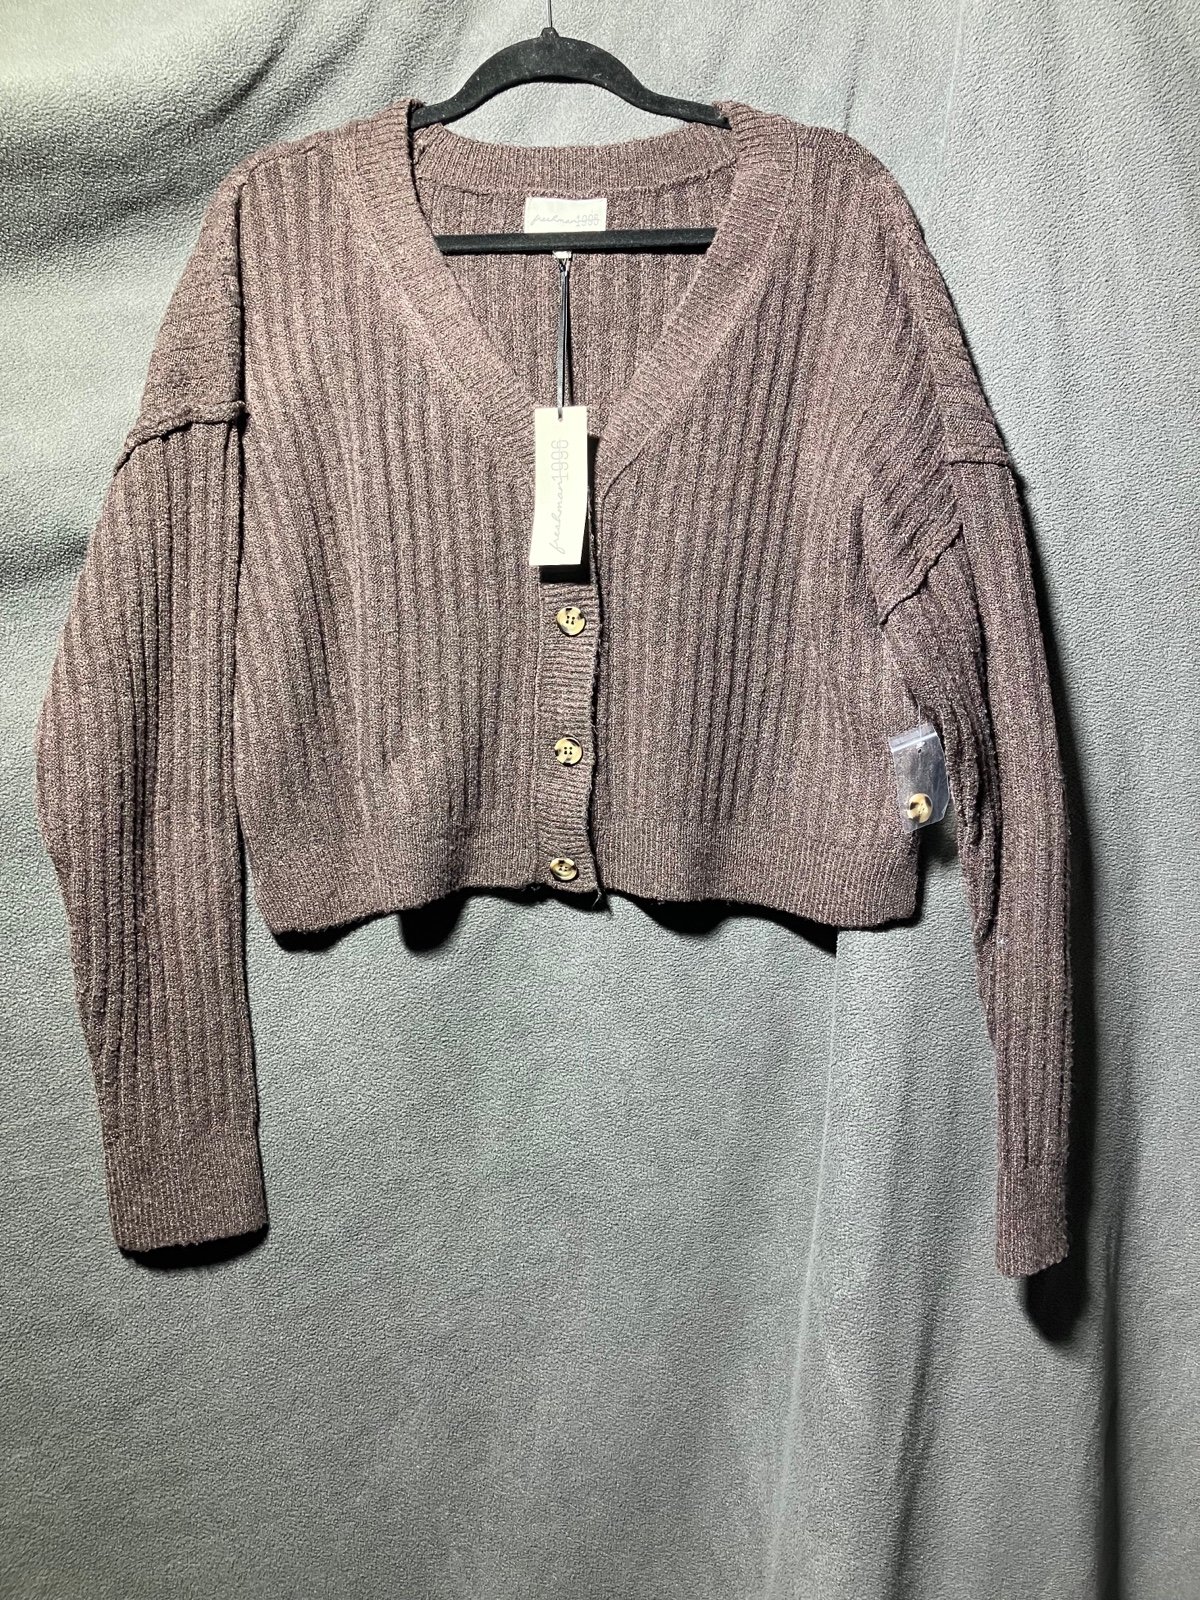 Great Brand new cardigan sweater oQMs3z23U well sale